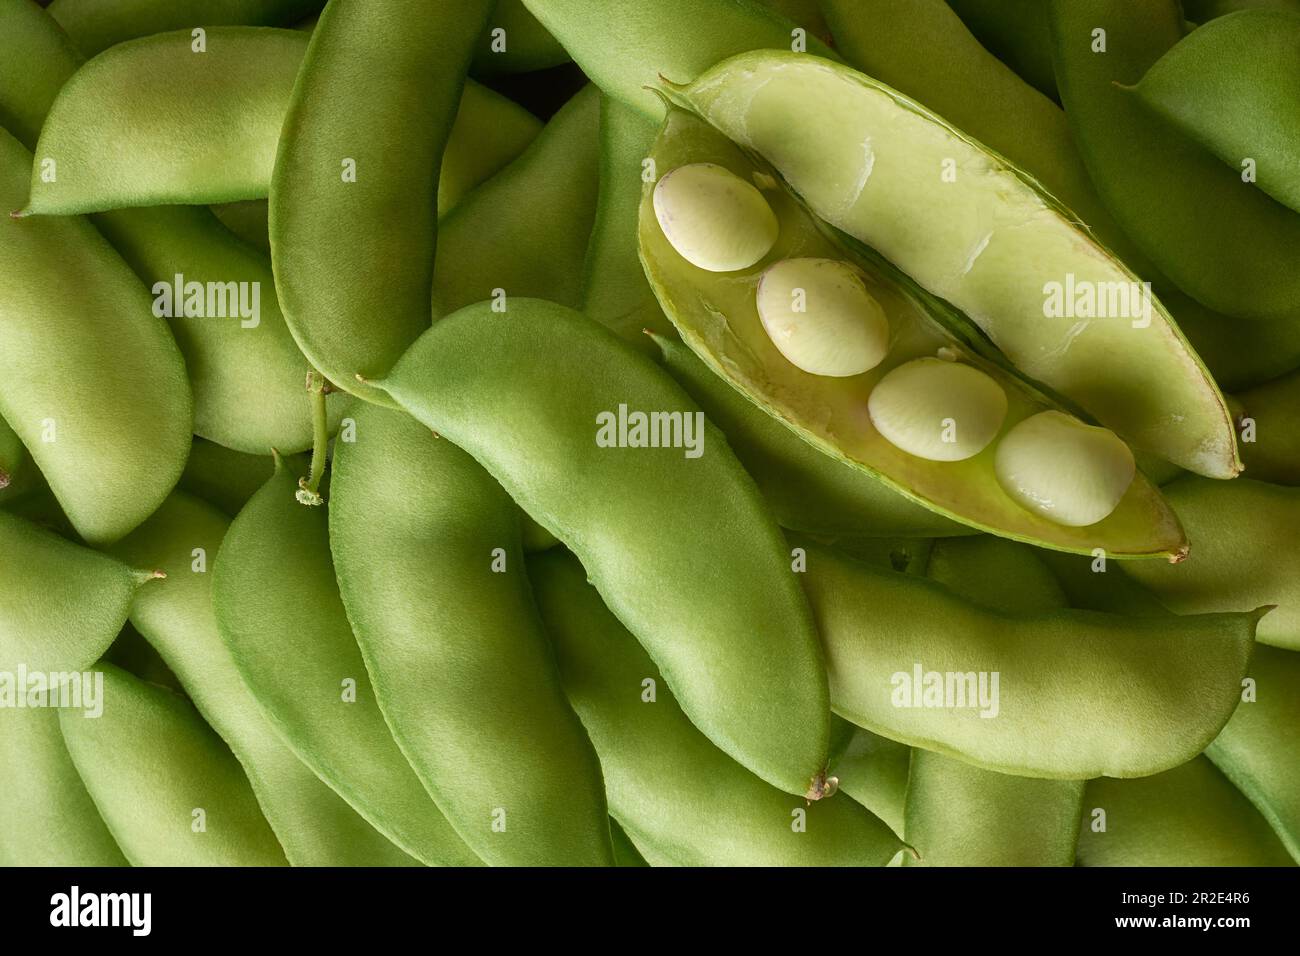 Ein Haufen Erbsenschoten, mit offenen Schoten und sichtbaren Samen, eine Art Hülsenfrüchte, die wegen ihrer nahrhaften Samen und Schoten weit verbreitet ist, geerntetes Gemüse Stockfoto